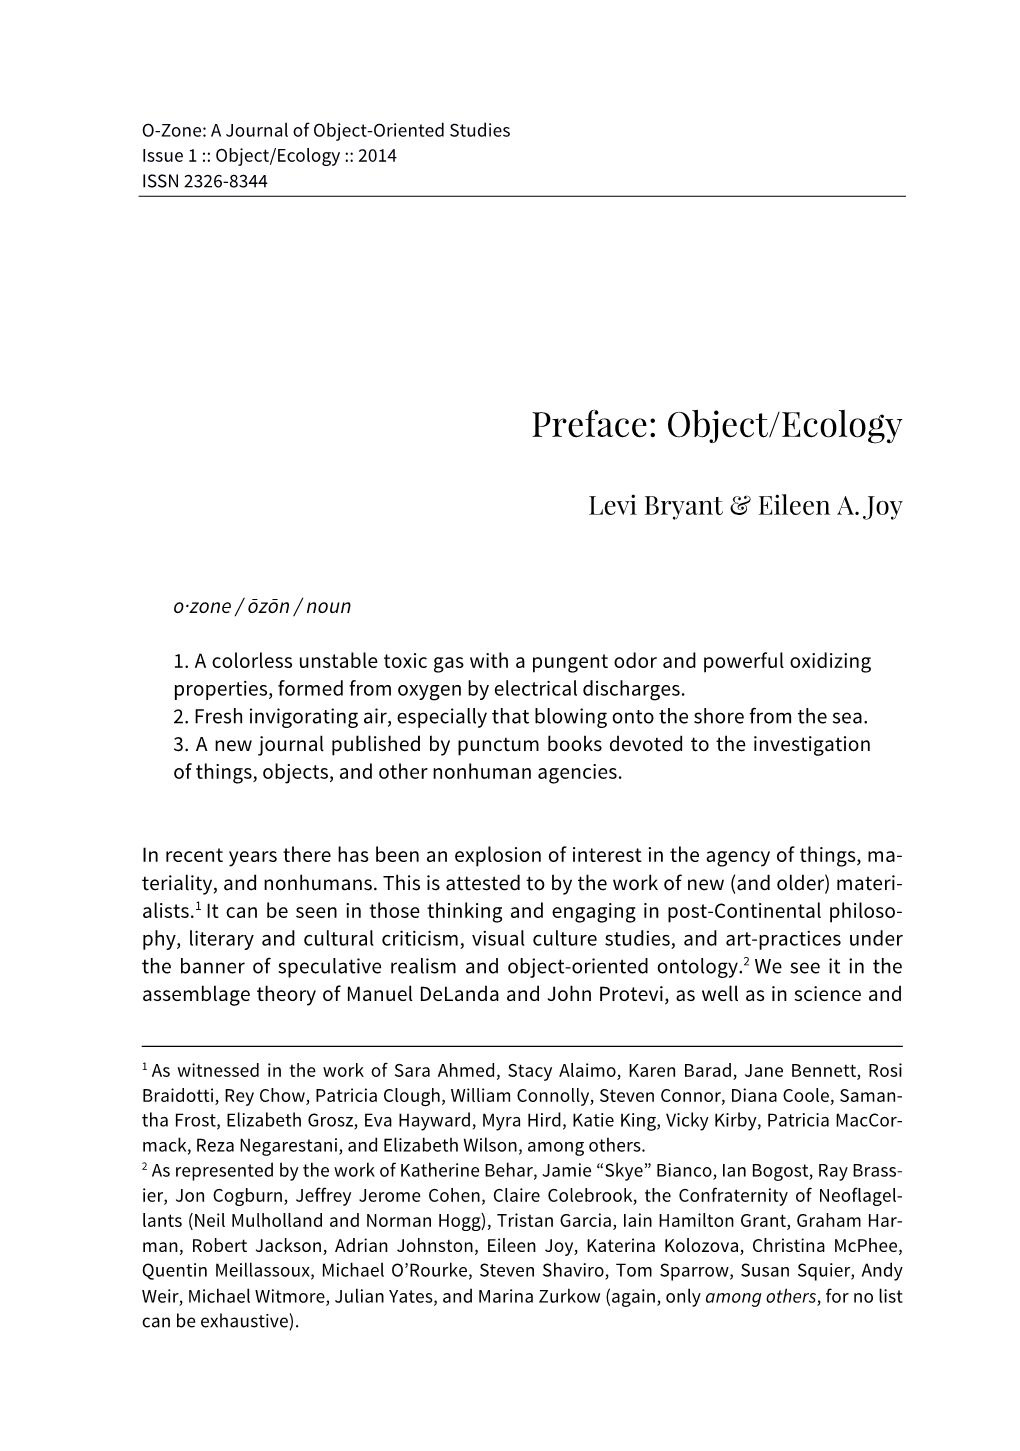 Preface: Object/Ecology